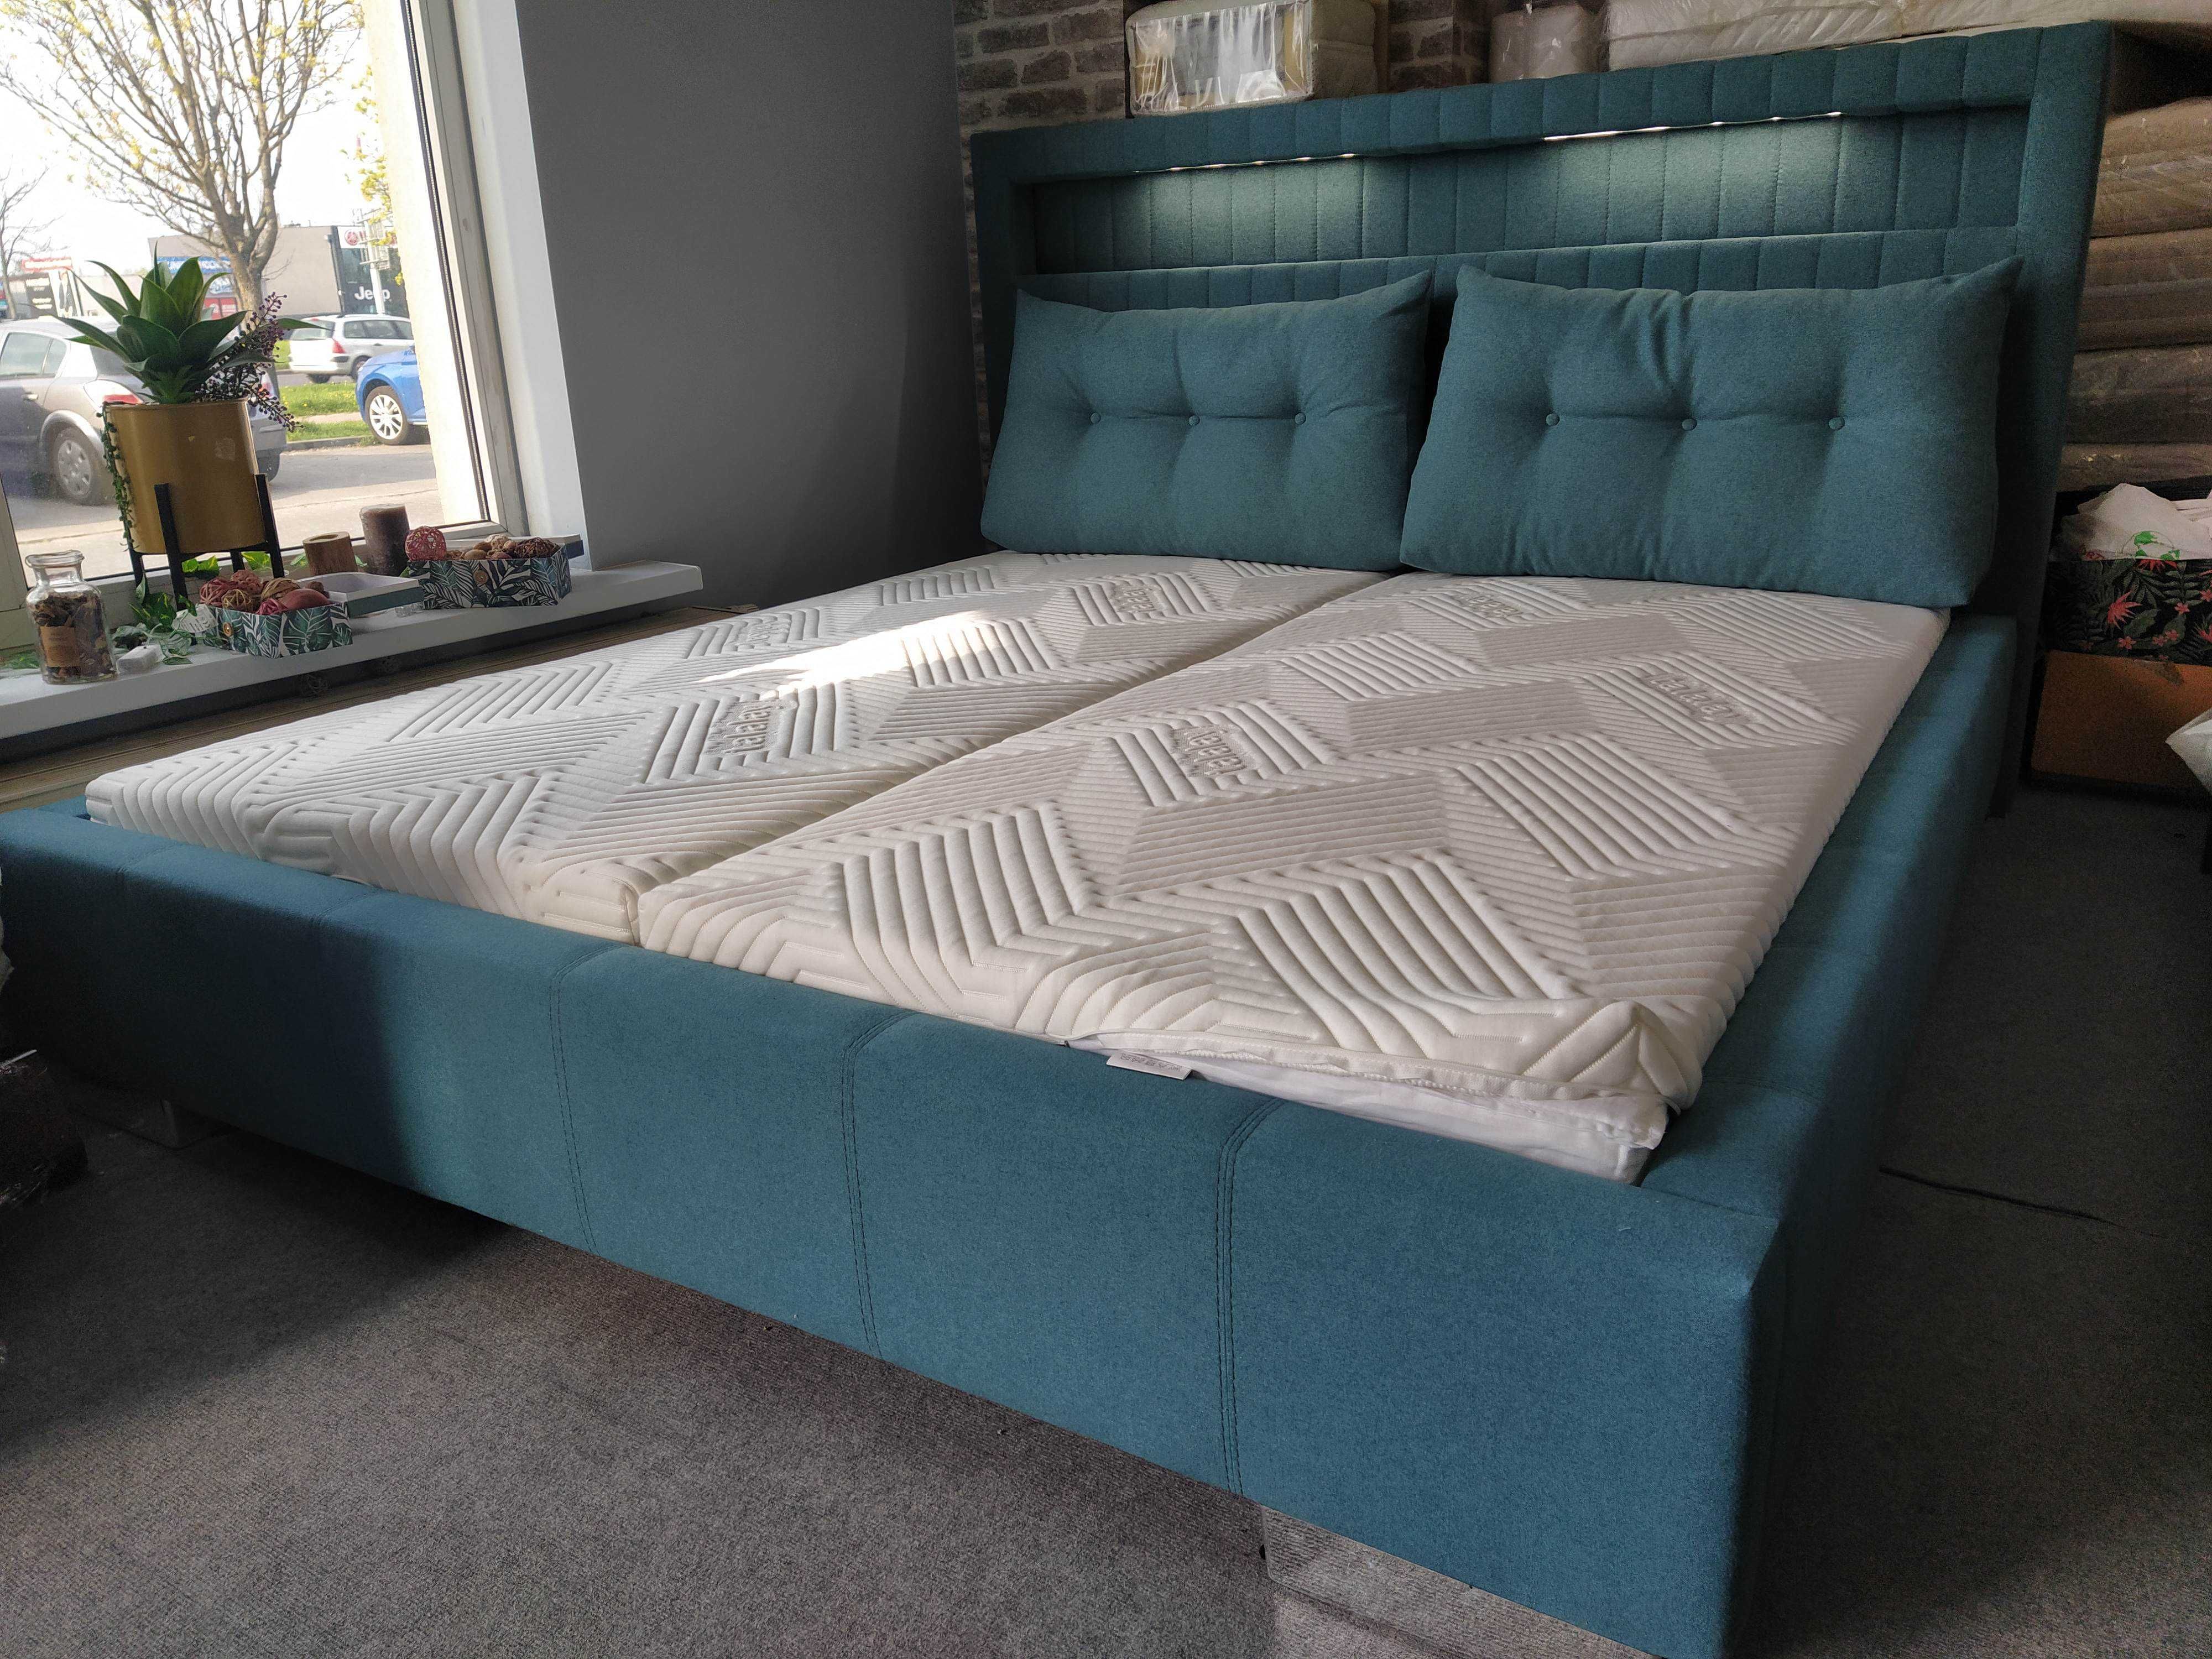 Łóżko tapicerowane 180x200 turkus podświetlane nowe od ręki dowóz